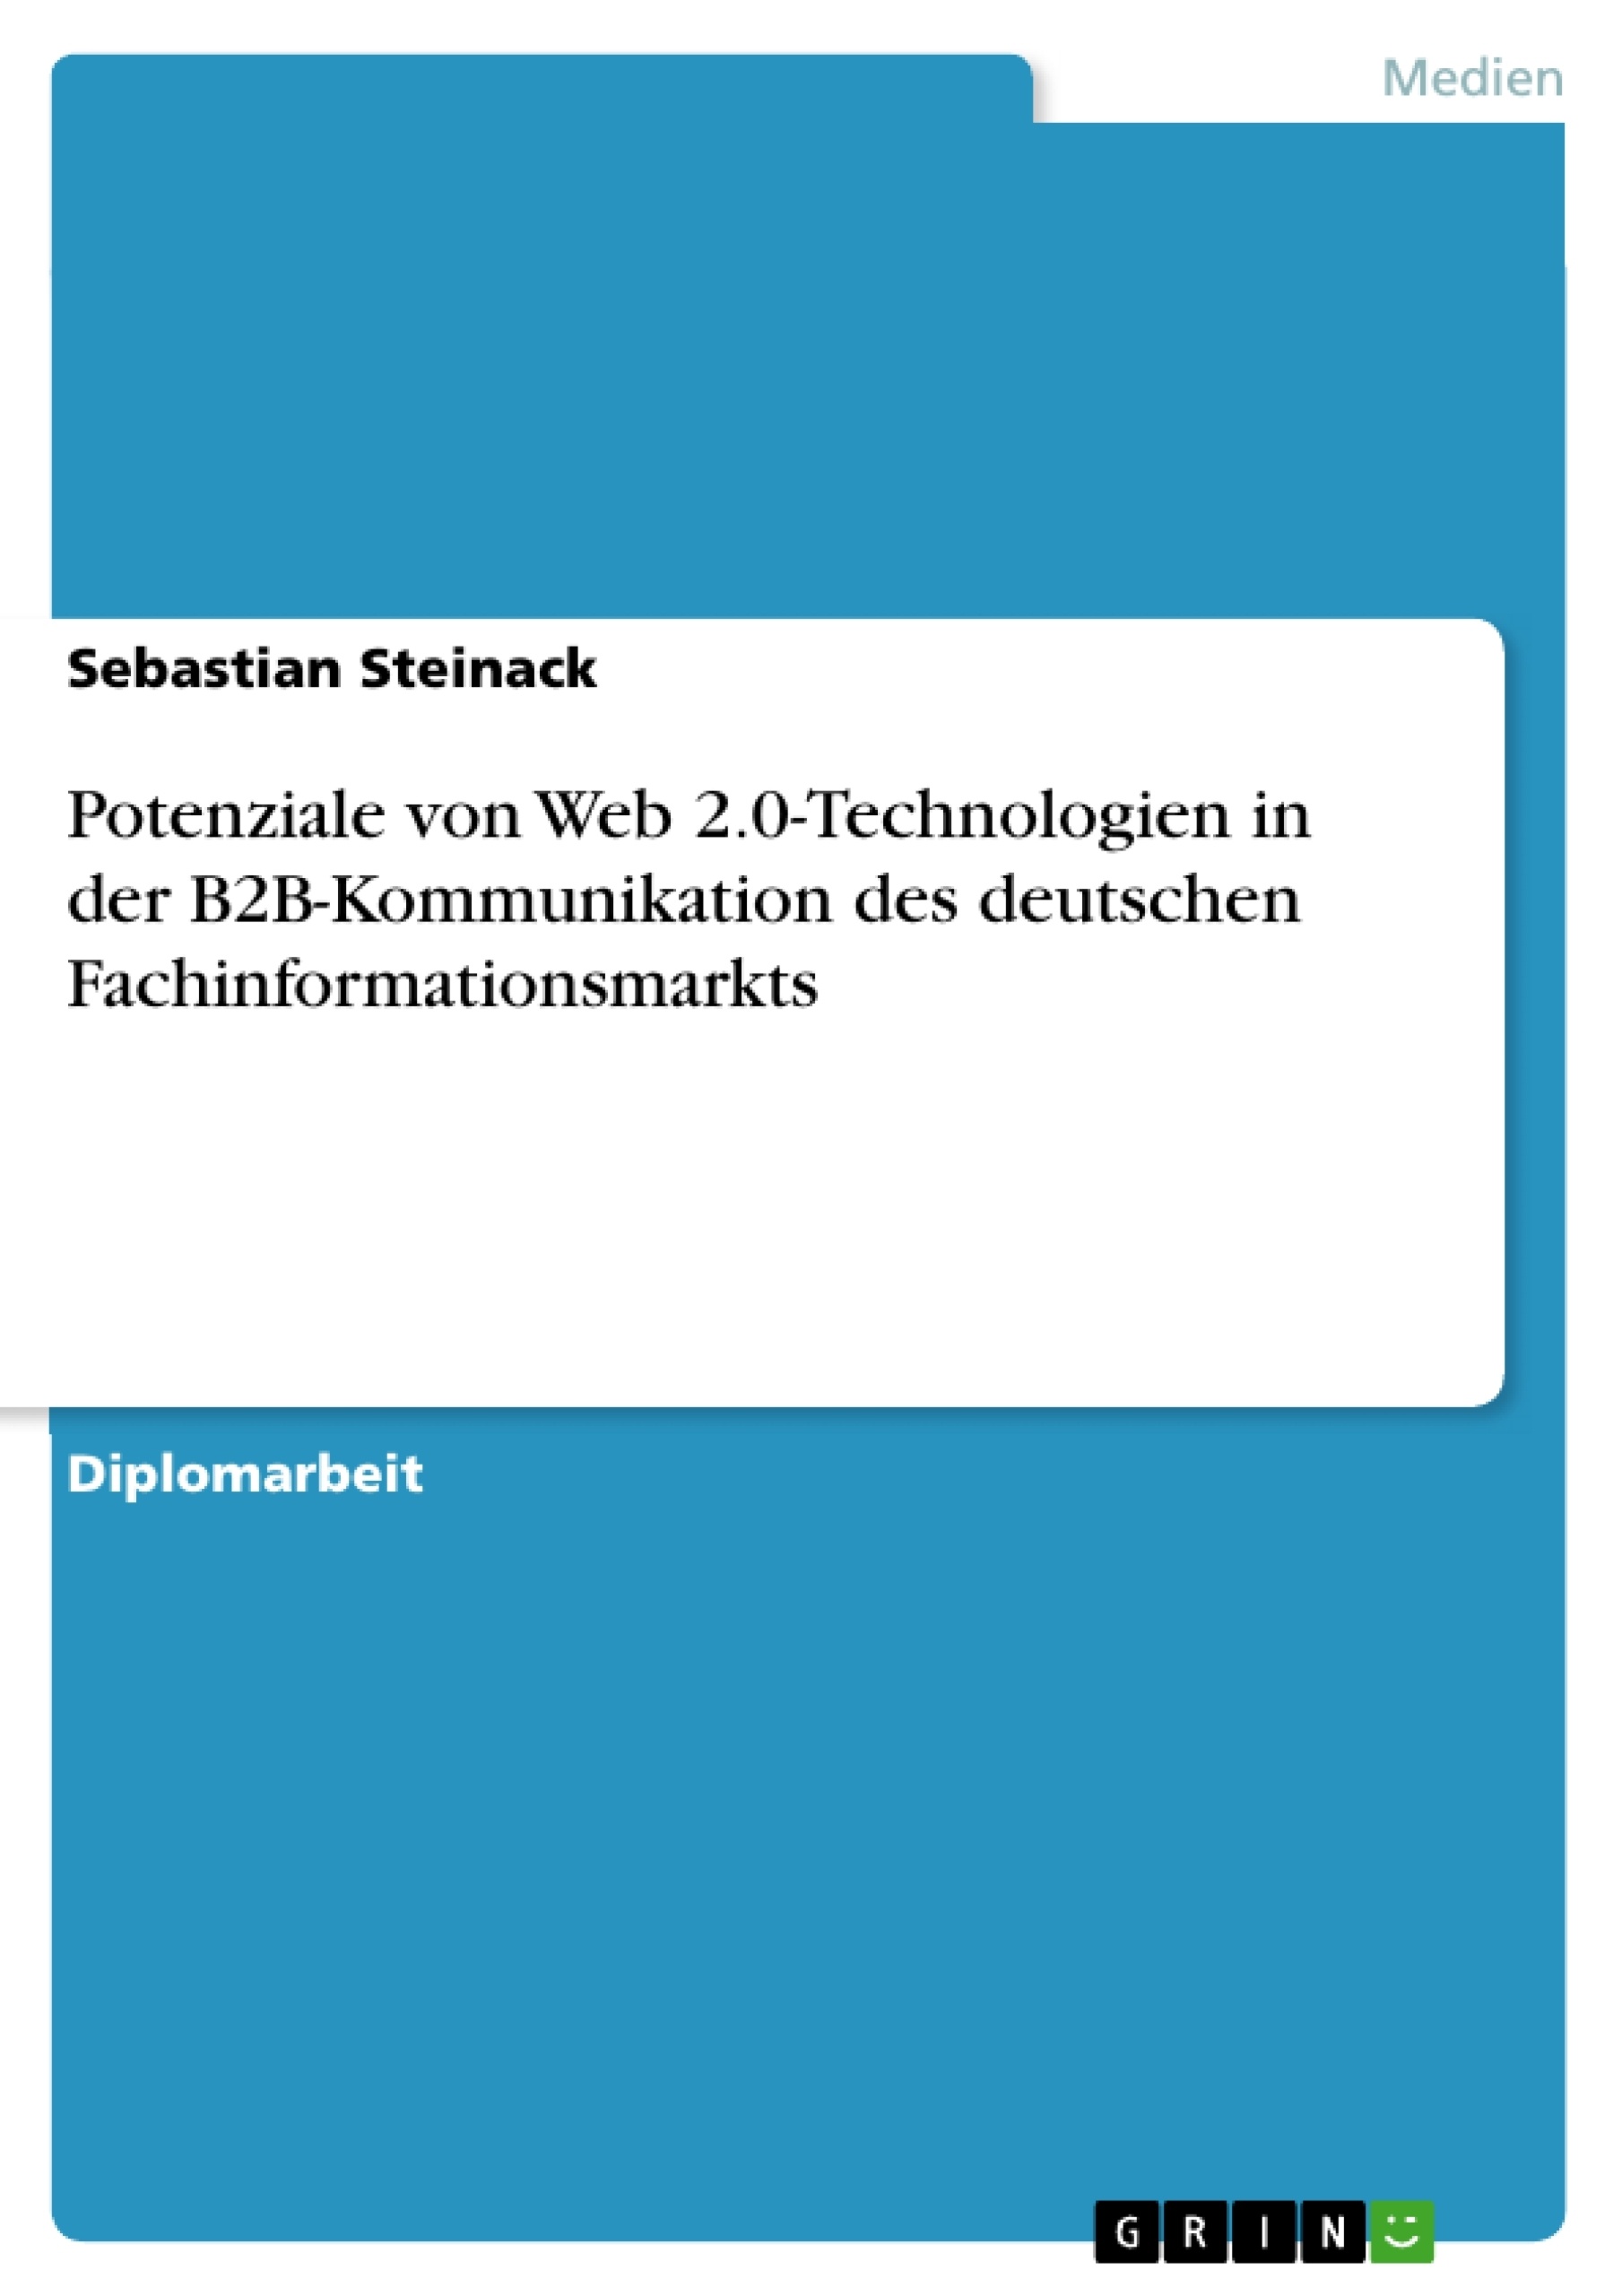 Title: Potenziale von Web 2.0-Technologien in der B2B-Kommunikation des deutschen Fachinformationsmarkts